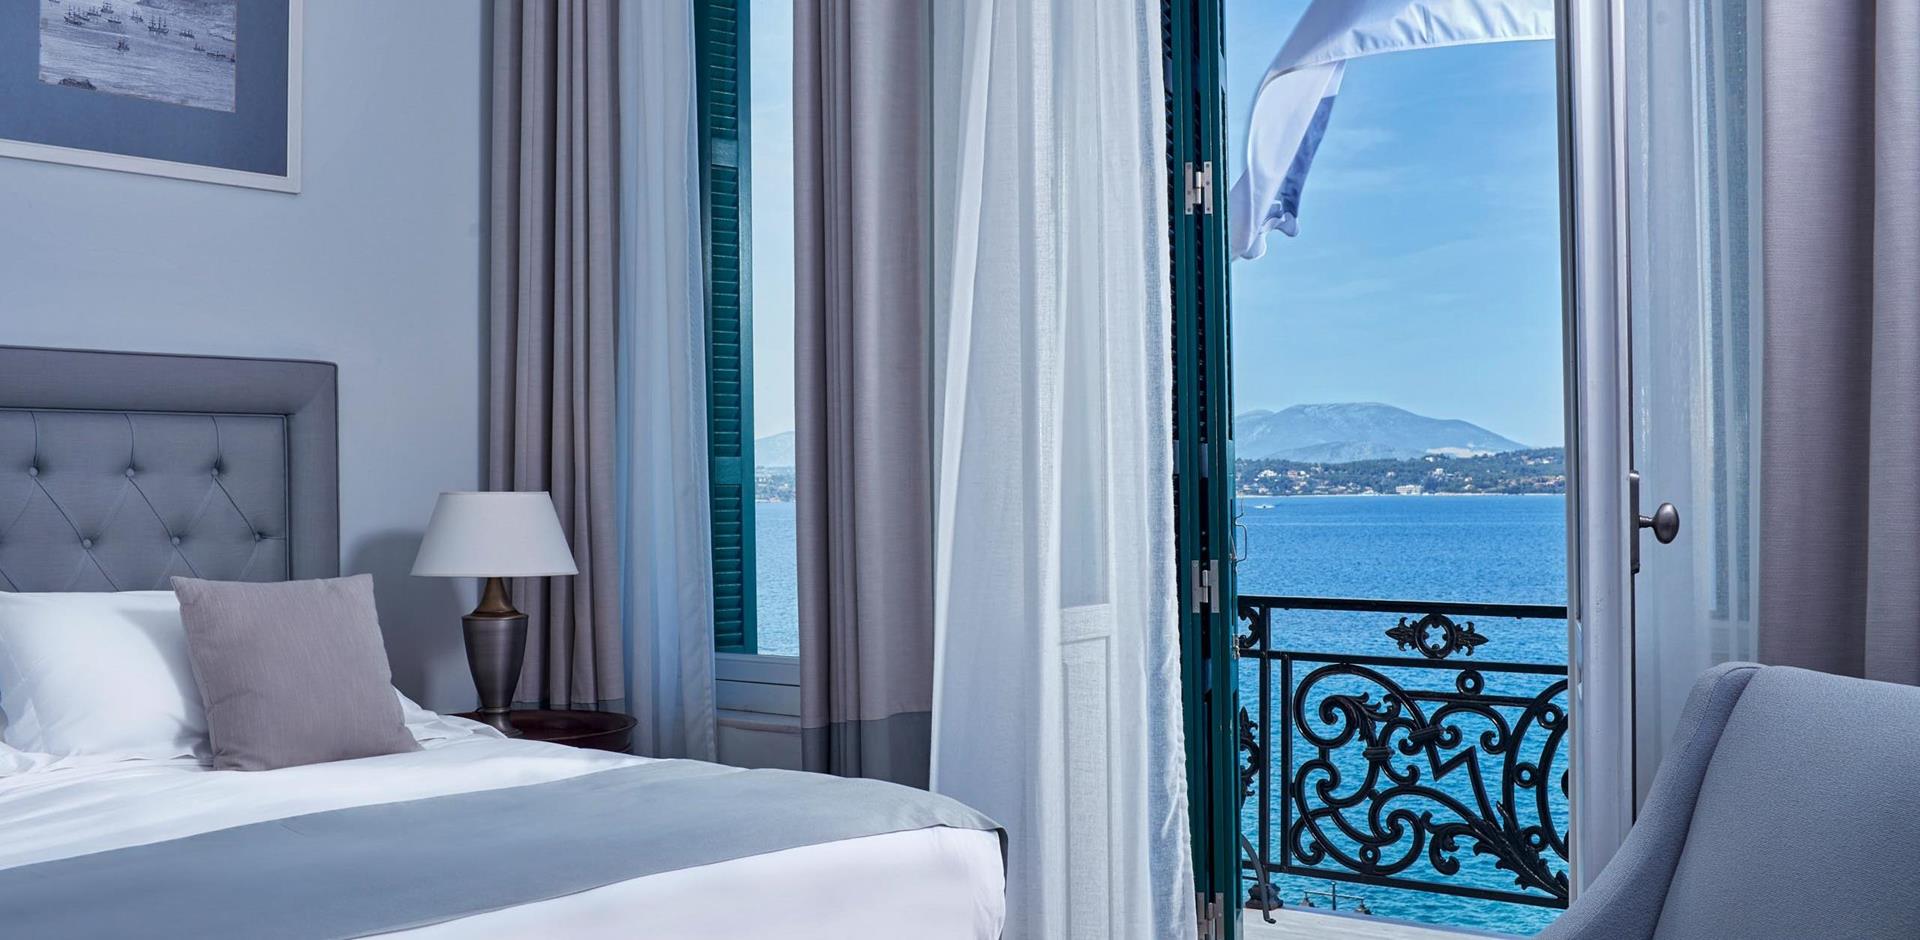 Poseidonion Grand Hotel, Accommodation, Greece, A&K